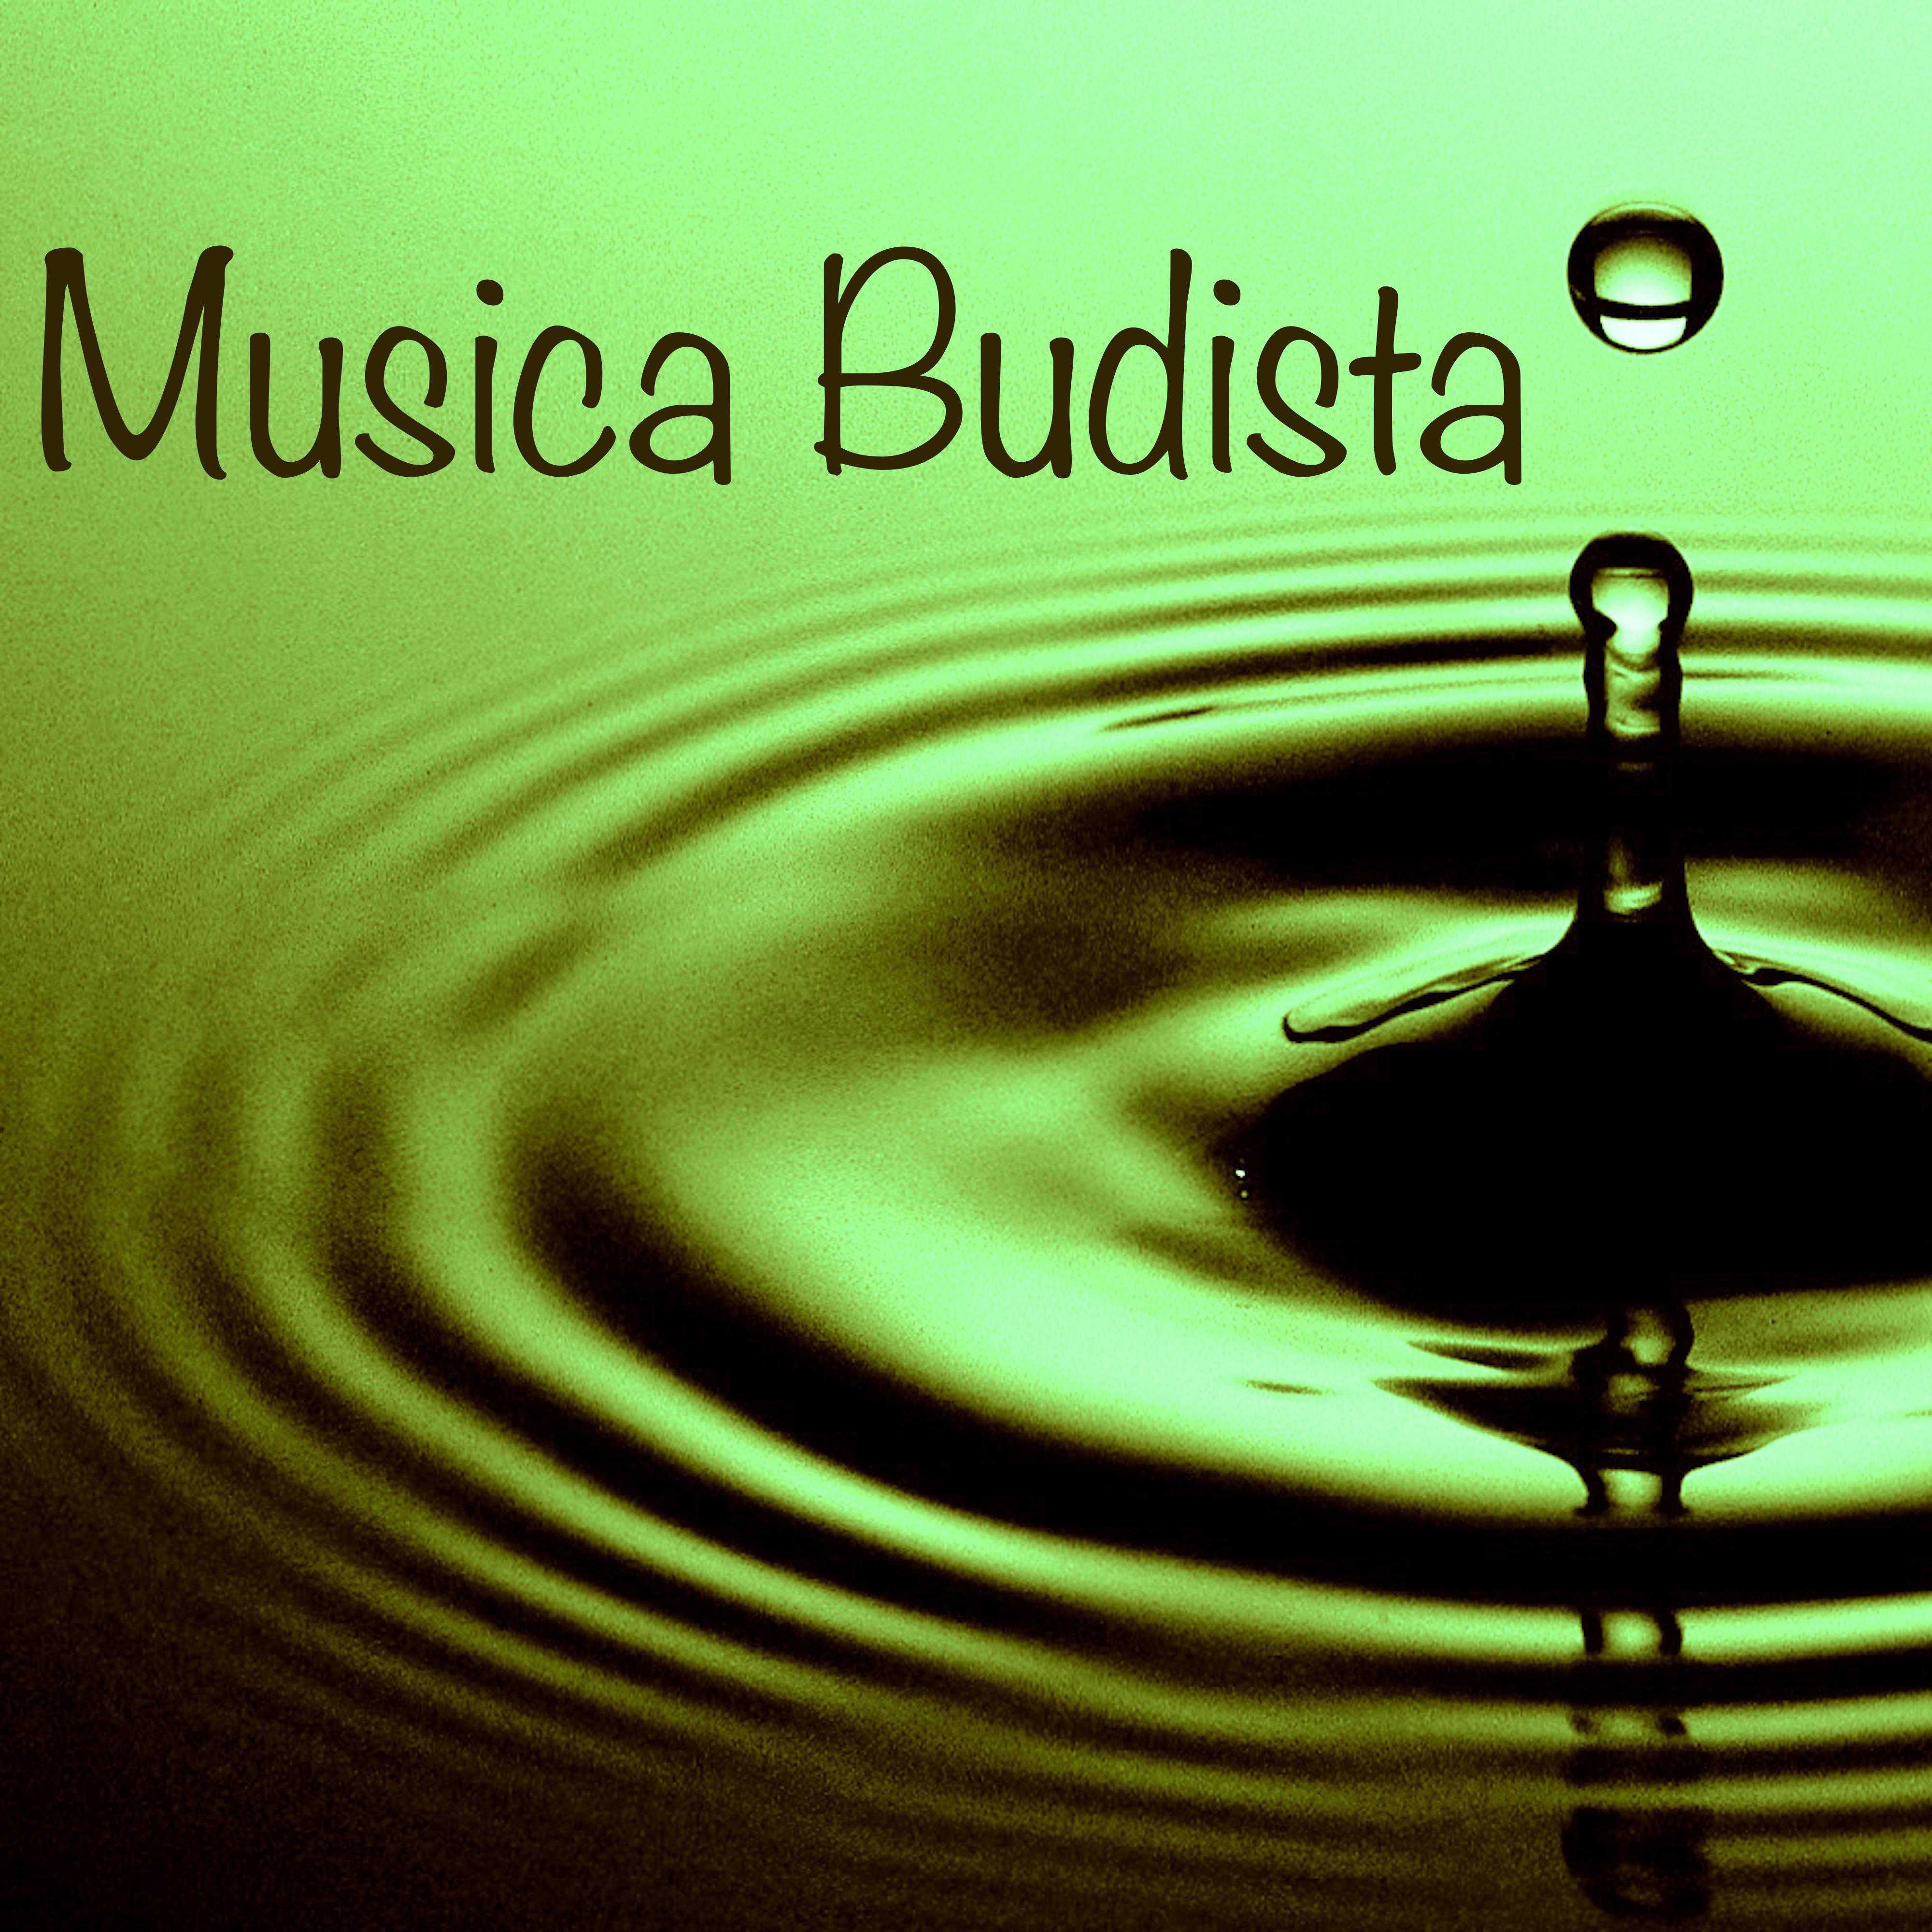 Musica Budista  Canciones para Aprender a Meditar, Meditacion Trrascendental, Metodos de Relajacion Mental, Budismo Zen, Yoga Vipassana